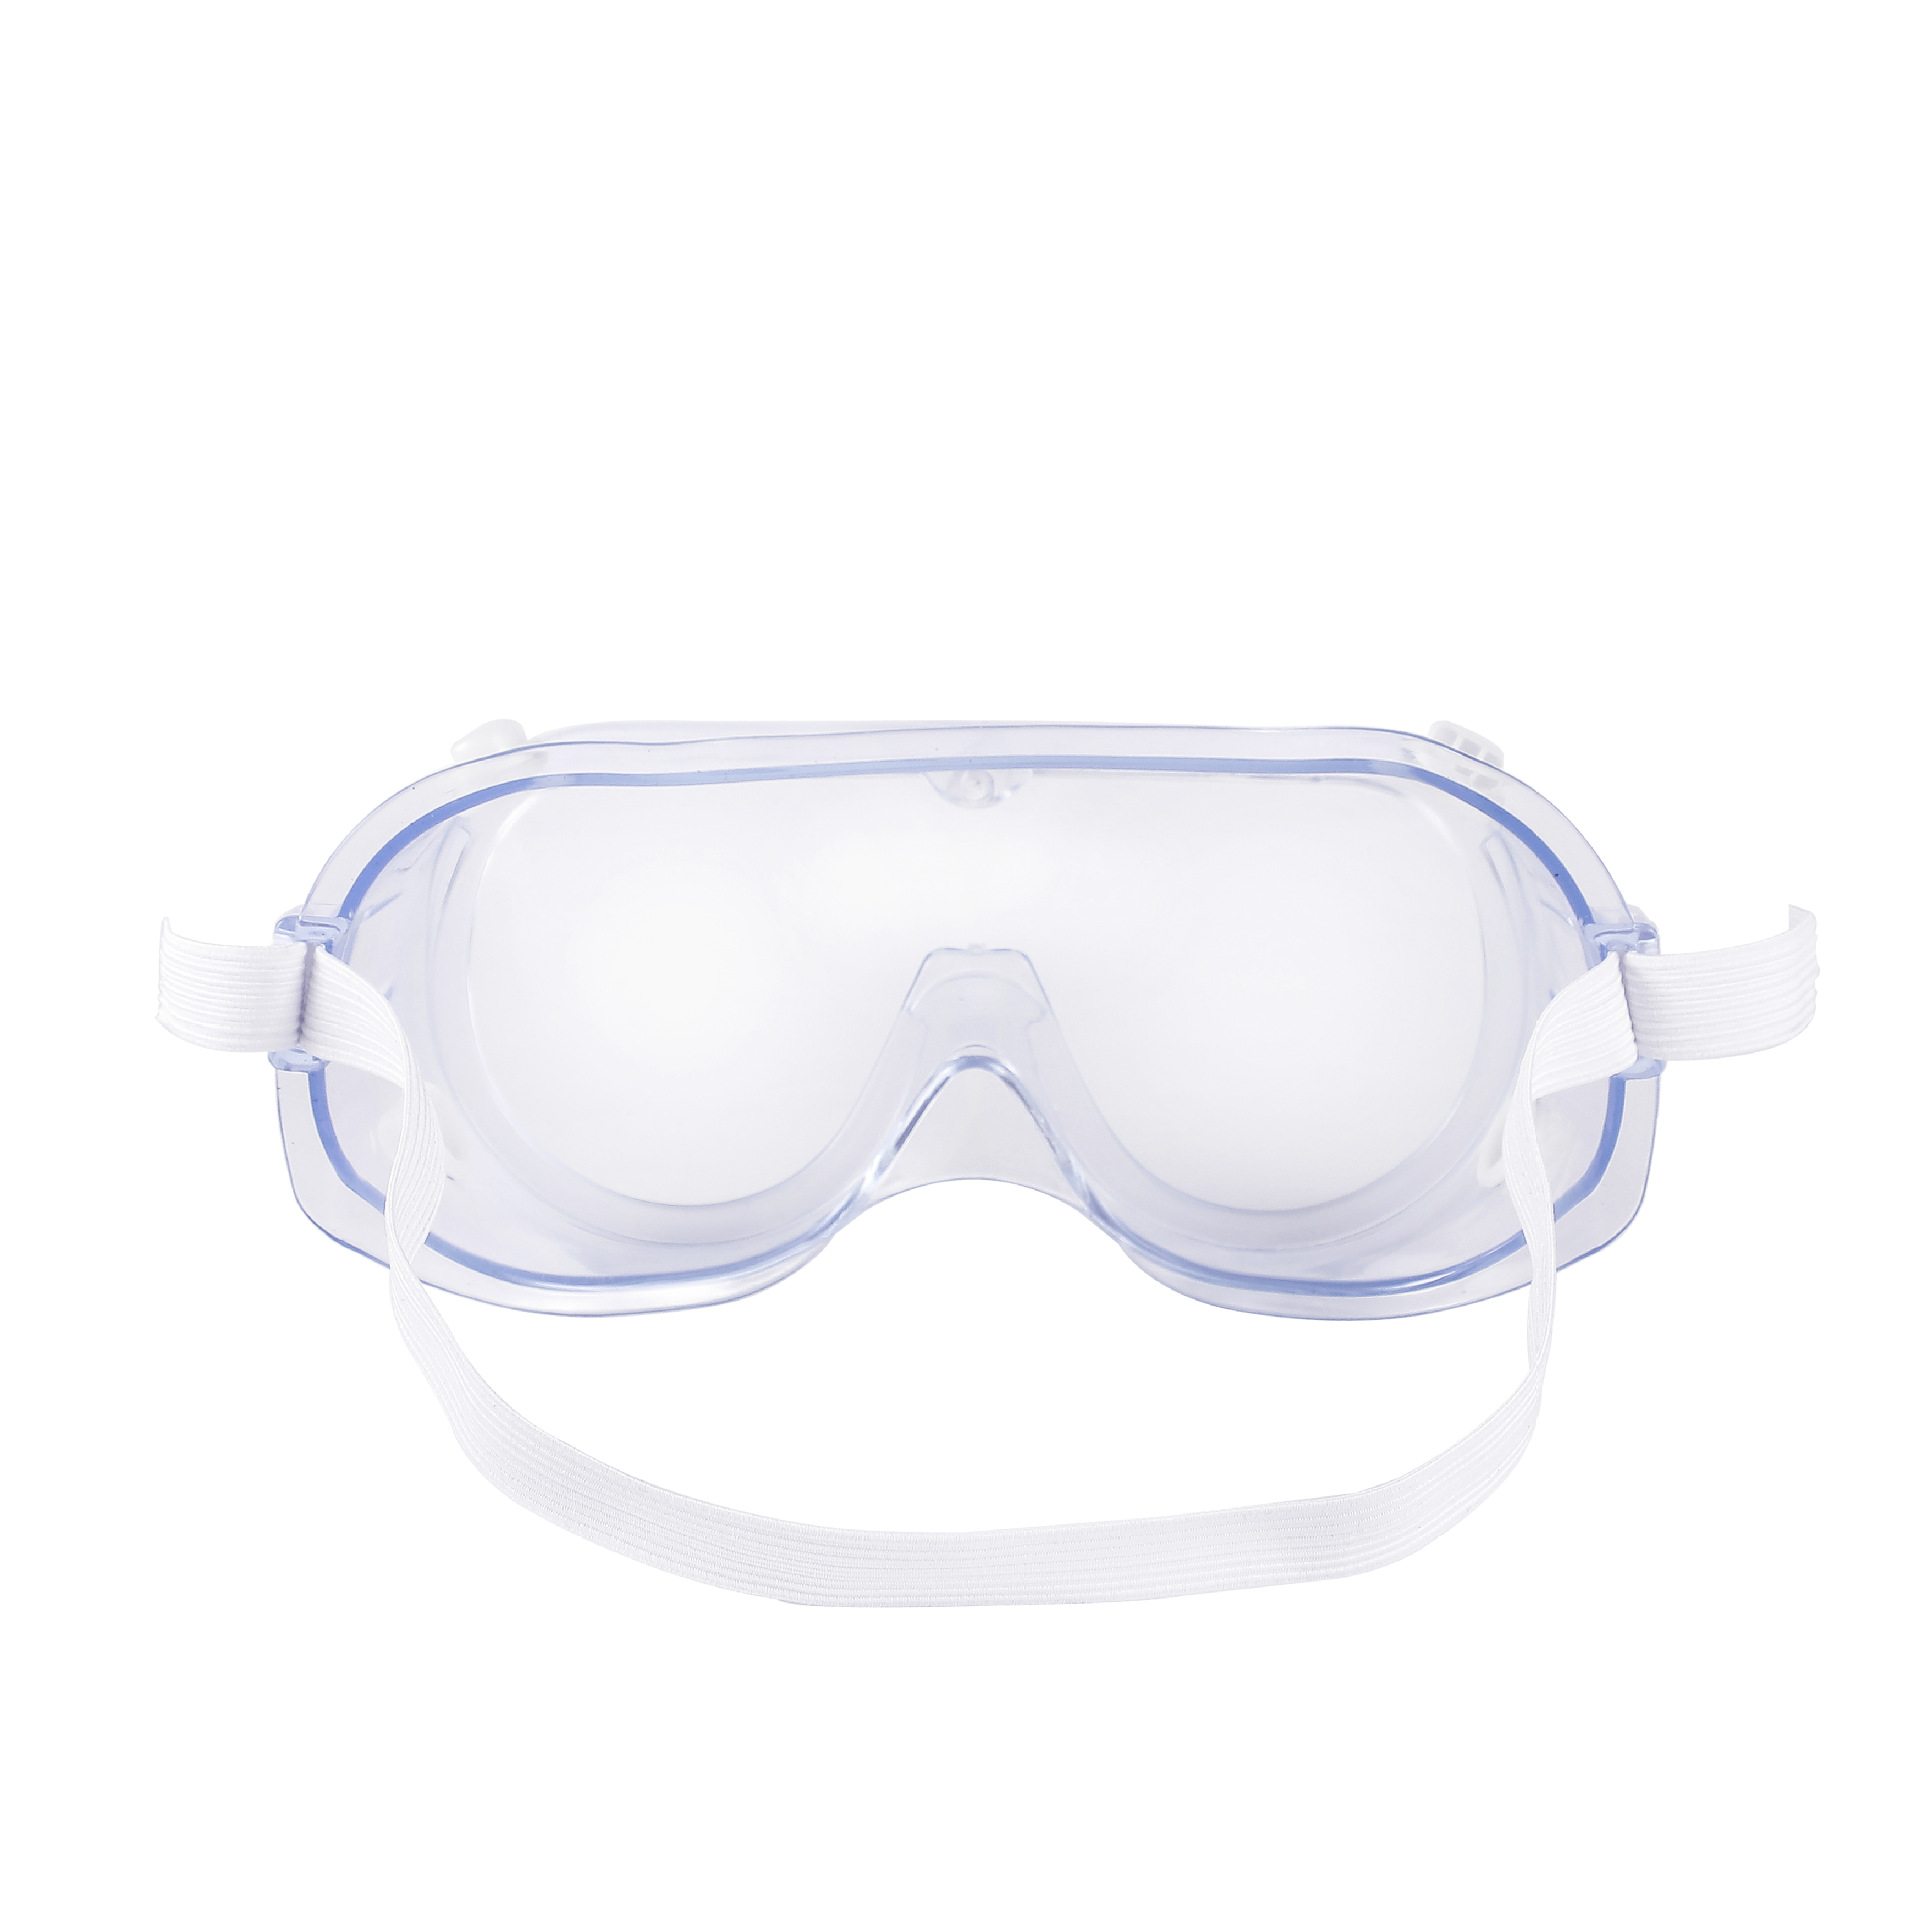 Gafas protectoras anti-arena multifuncionales gafas de seguridad gafas de laboratorio de trabajo gafas de seguridad gafas protectoras contra salpicaduras